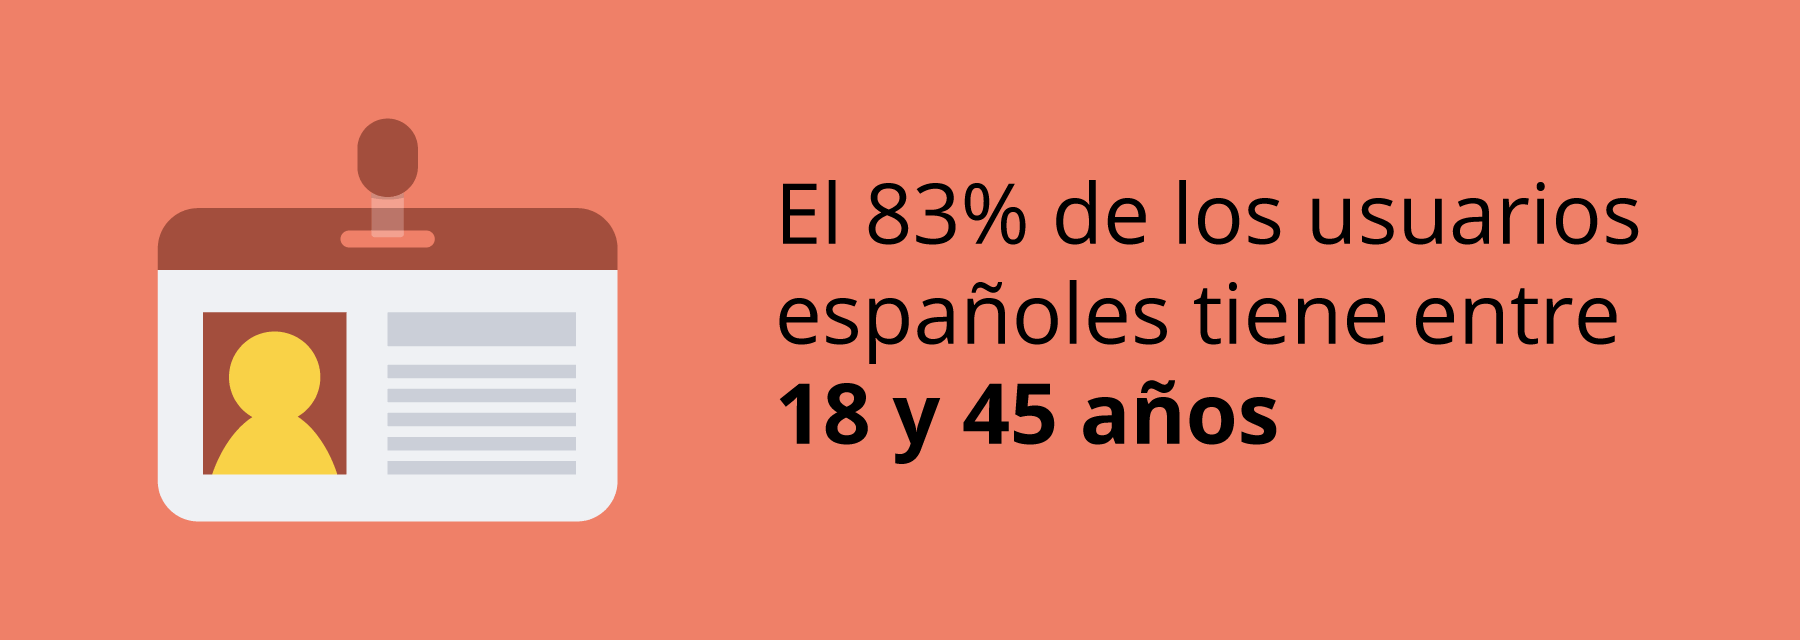 Estadística sobre la edad de los jugadores españoles